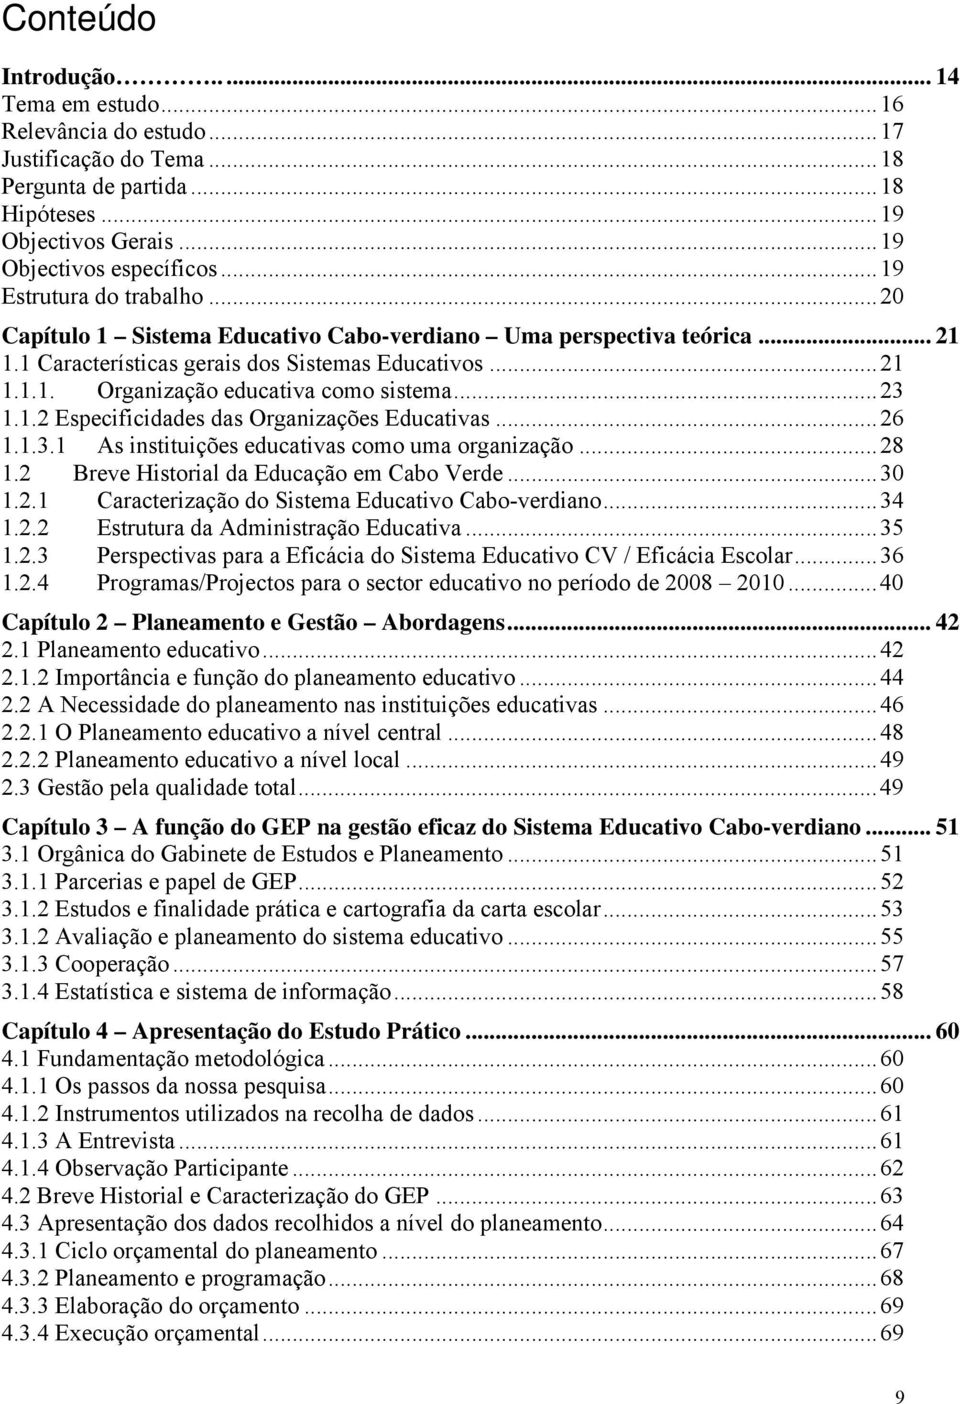 ..23 1.1.2 Especificidades das Organizações Educativas...26 1.1.3.1 As instituições educativas como uma organização...28 1.2 Breve Historial da Educação em Cabo Verde...30 1.2.1 Caracterização do Sistema Educativo Cabo-verdiano.